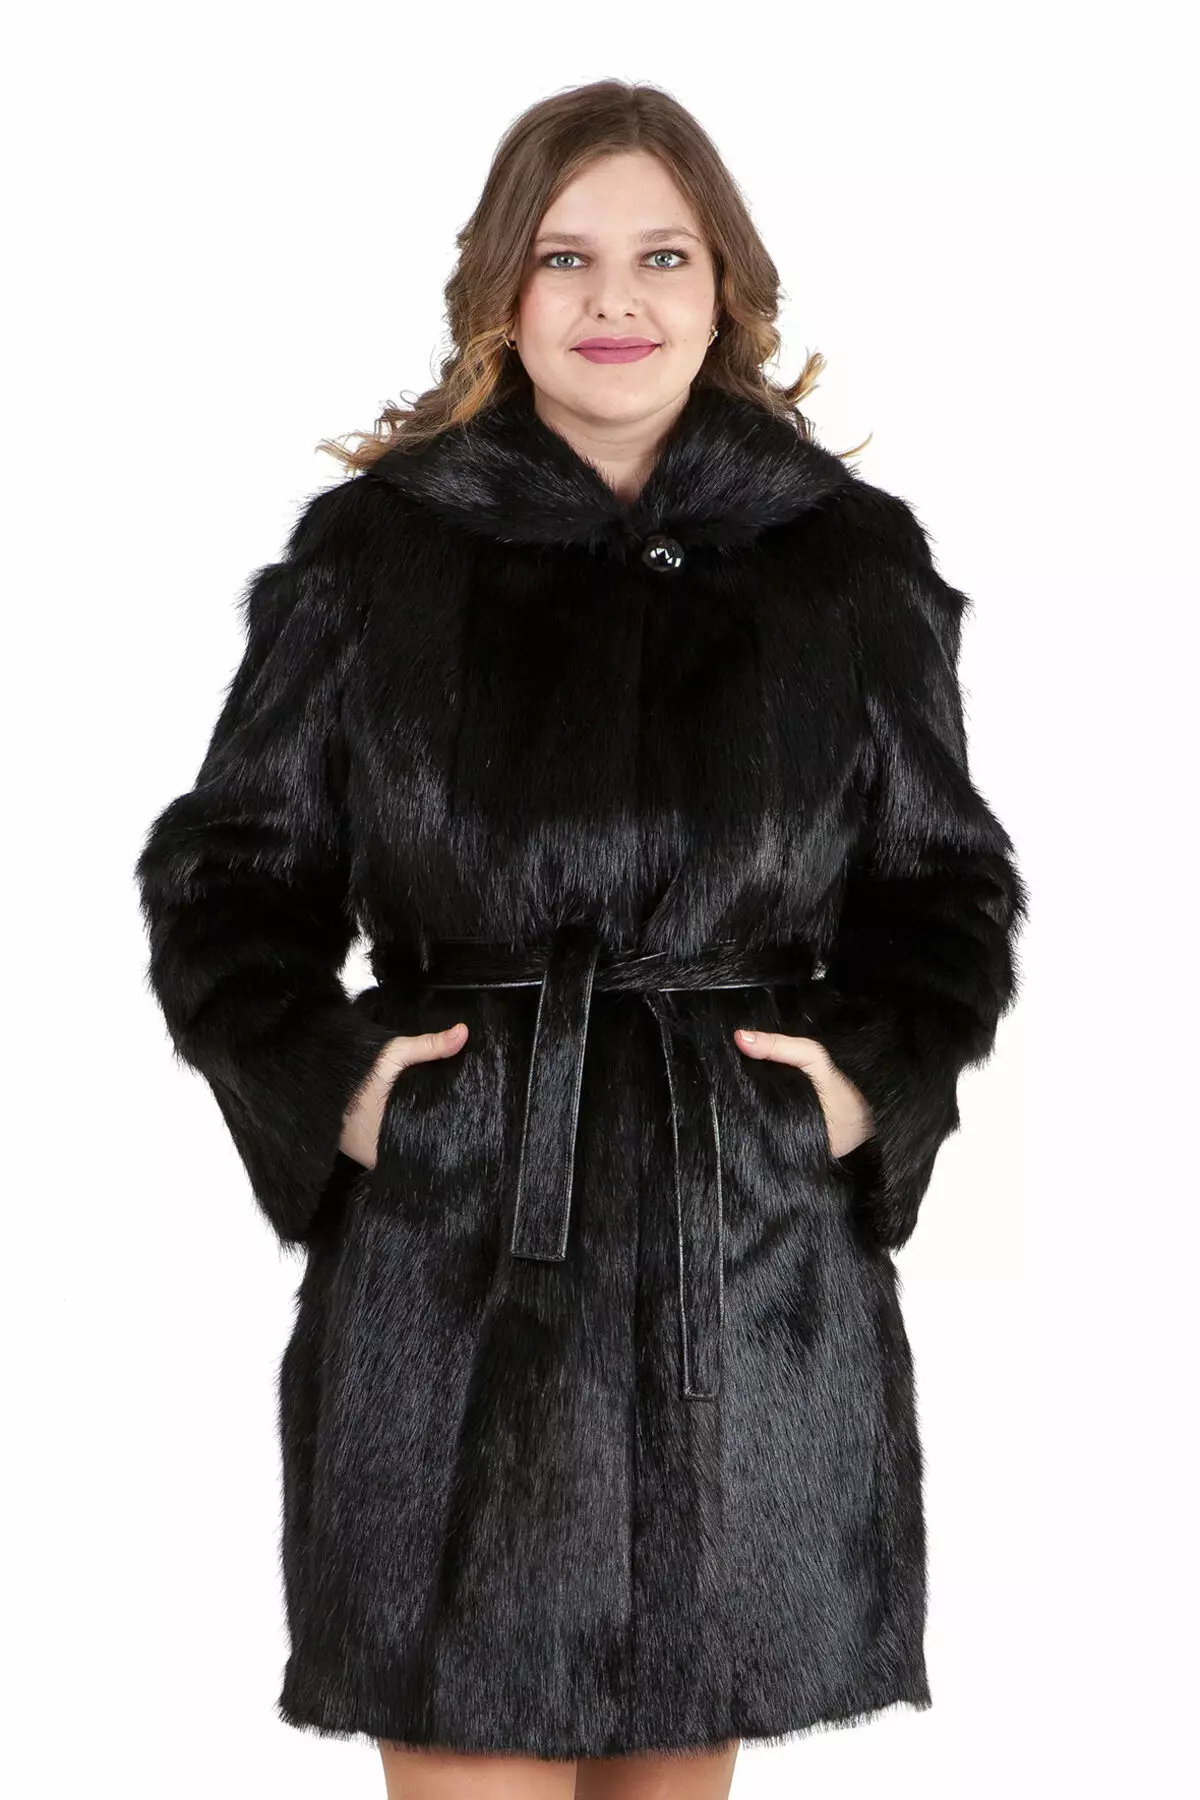 Cappotto di pelliccia NUTRIA (113 foto): Quanto costa il cappotto nutriente, dallo scudo nutria, caldo o no, blu nutria, bianco, con cappuccio, recensioni 711_107